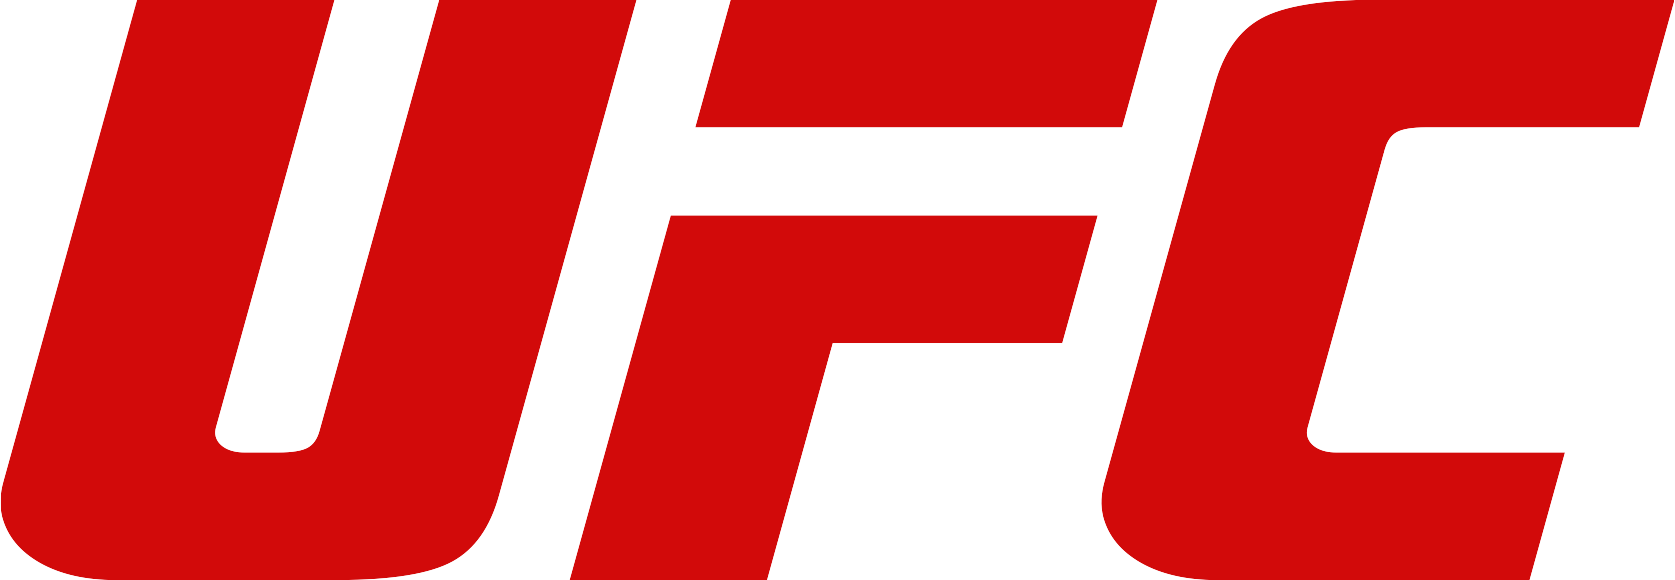 Ufc logotipo Transparente png